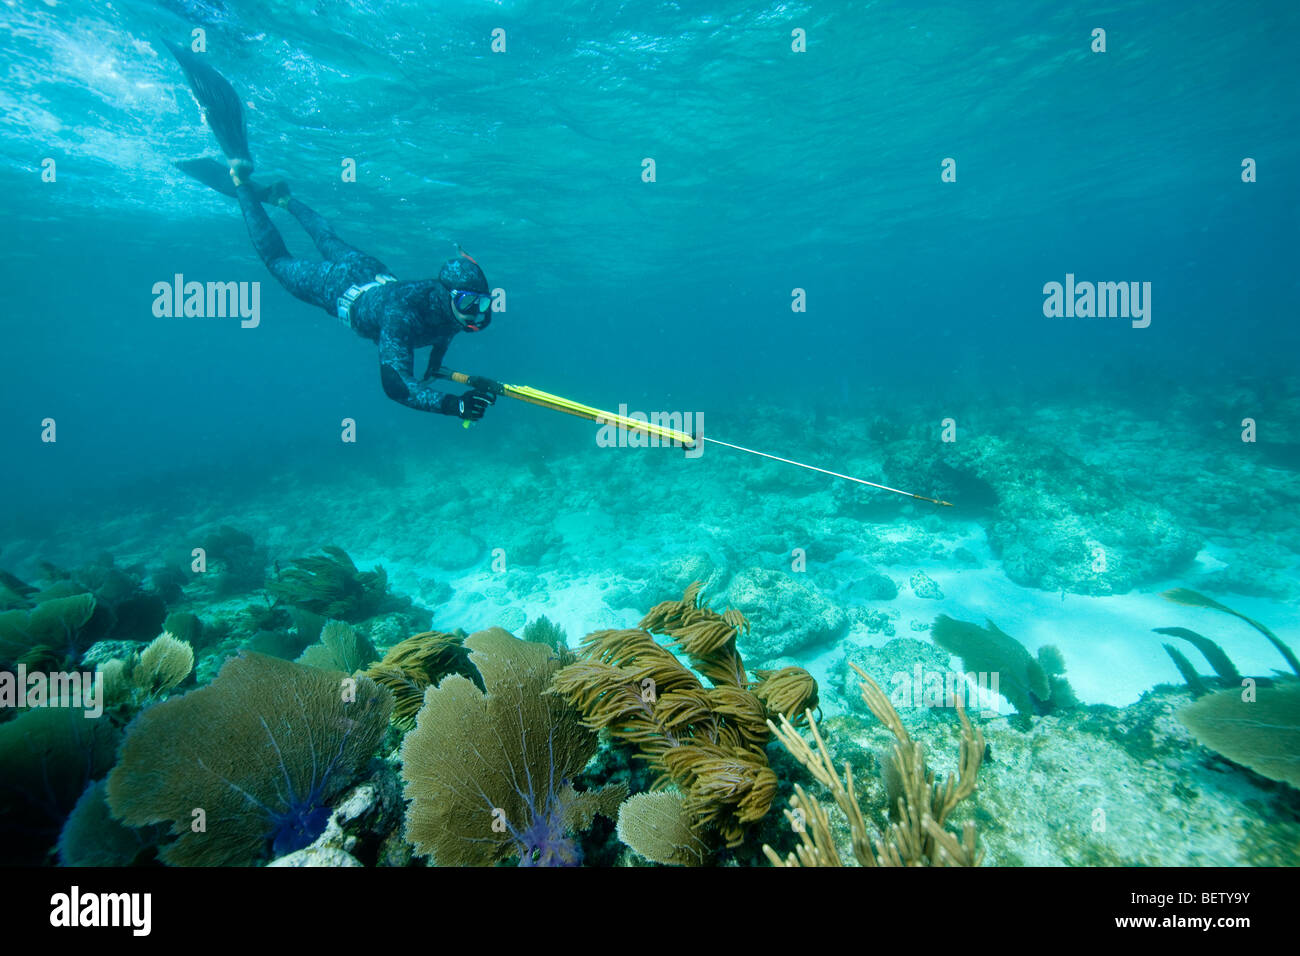 Лов дайв. Подводная охота. Подводная рыбалка. Рыбалка под водой. Фото подводной охоты на море.